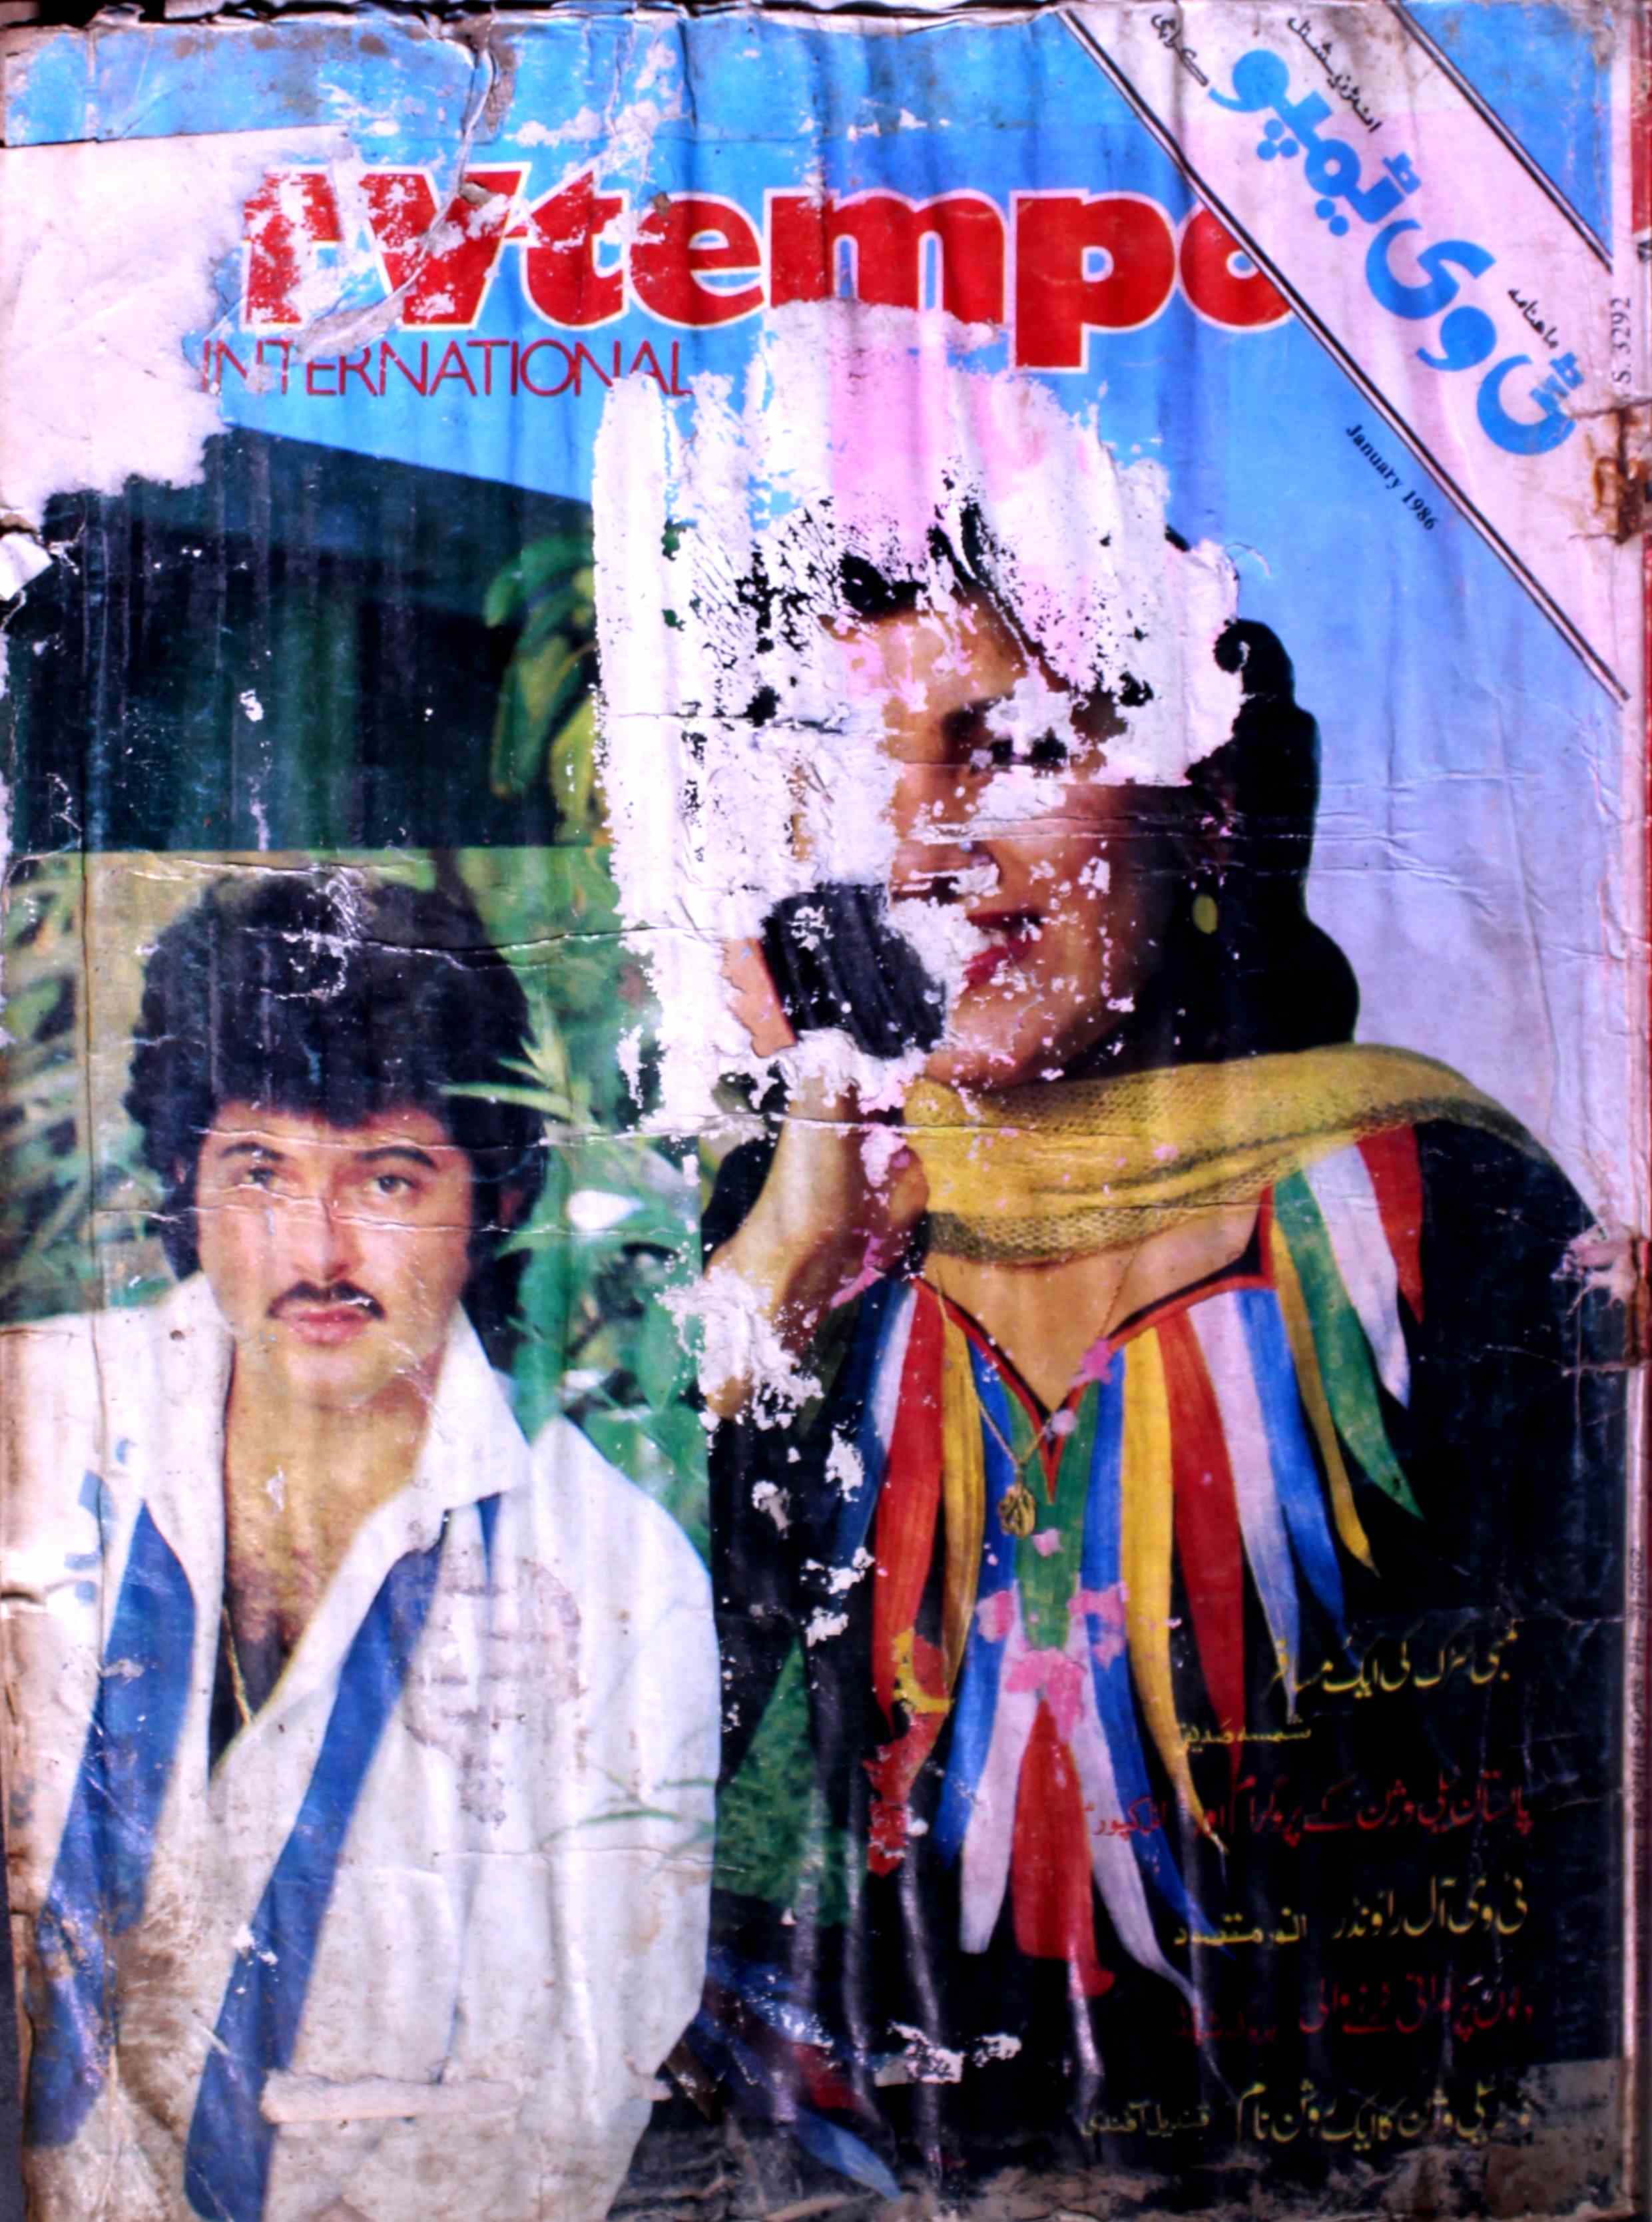 tv-tempo-shumaara-number-001-rukhsana-seham-mirza-magazines